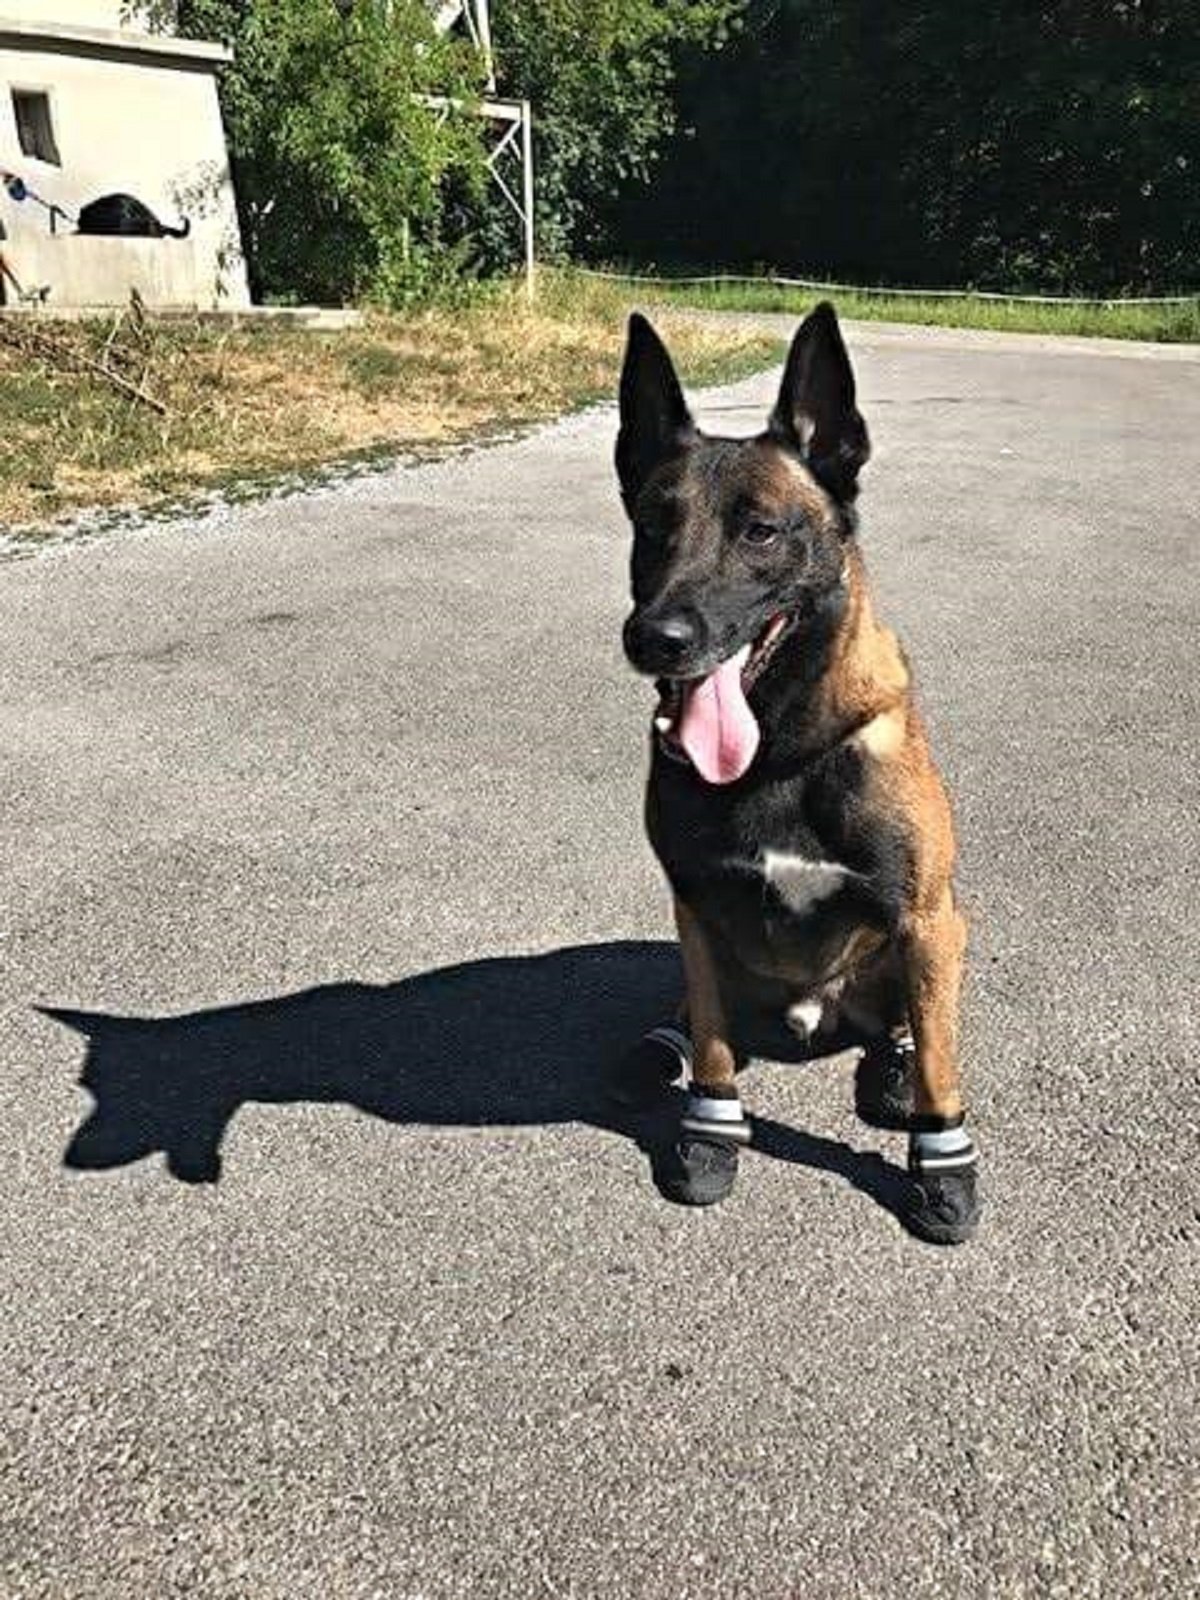 La Policía de Zurich protege los perros para que no se quemen en el asfalto cuando hace calor / Foto: Policía de Zurich Twitter